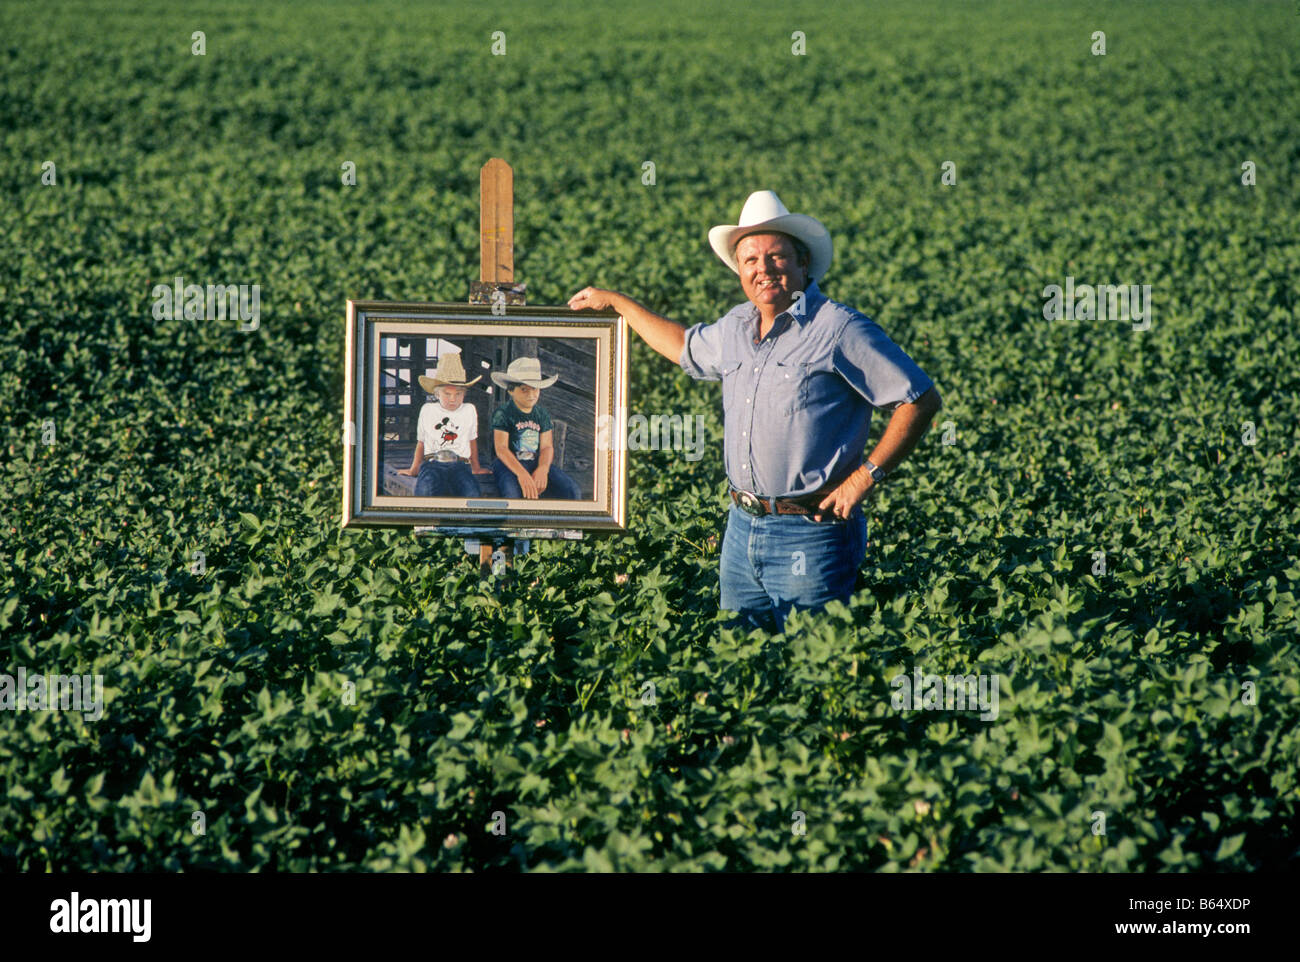 Un portrait de Carl Clapp bien connue de l'artiste dans son domaine agricole de coton avec une peinture de ses deux fils Banque D'Images